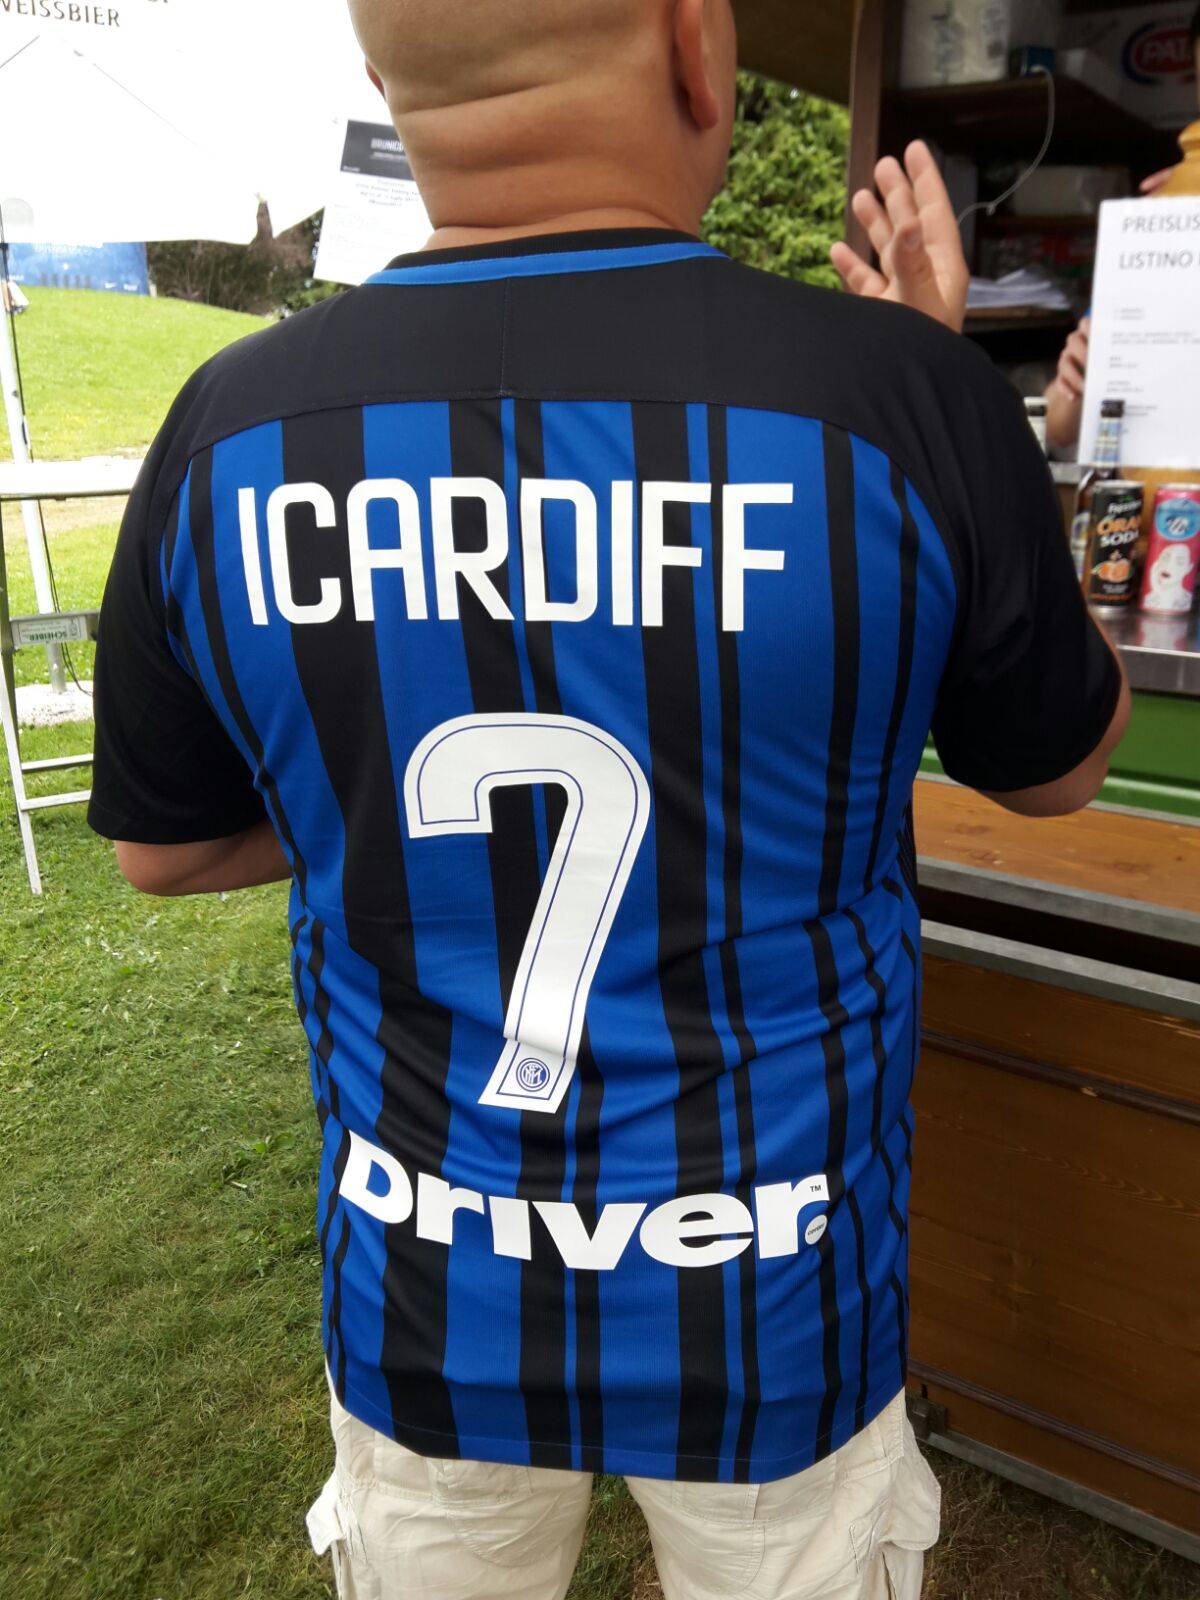 Un tifoso dell'Inter si prende gioco della Juve: maglia nerazzurra con la scritta Icardiff